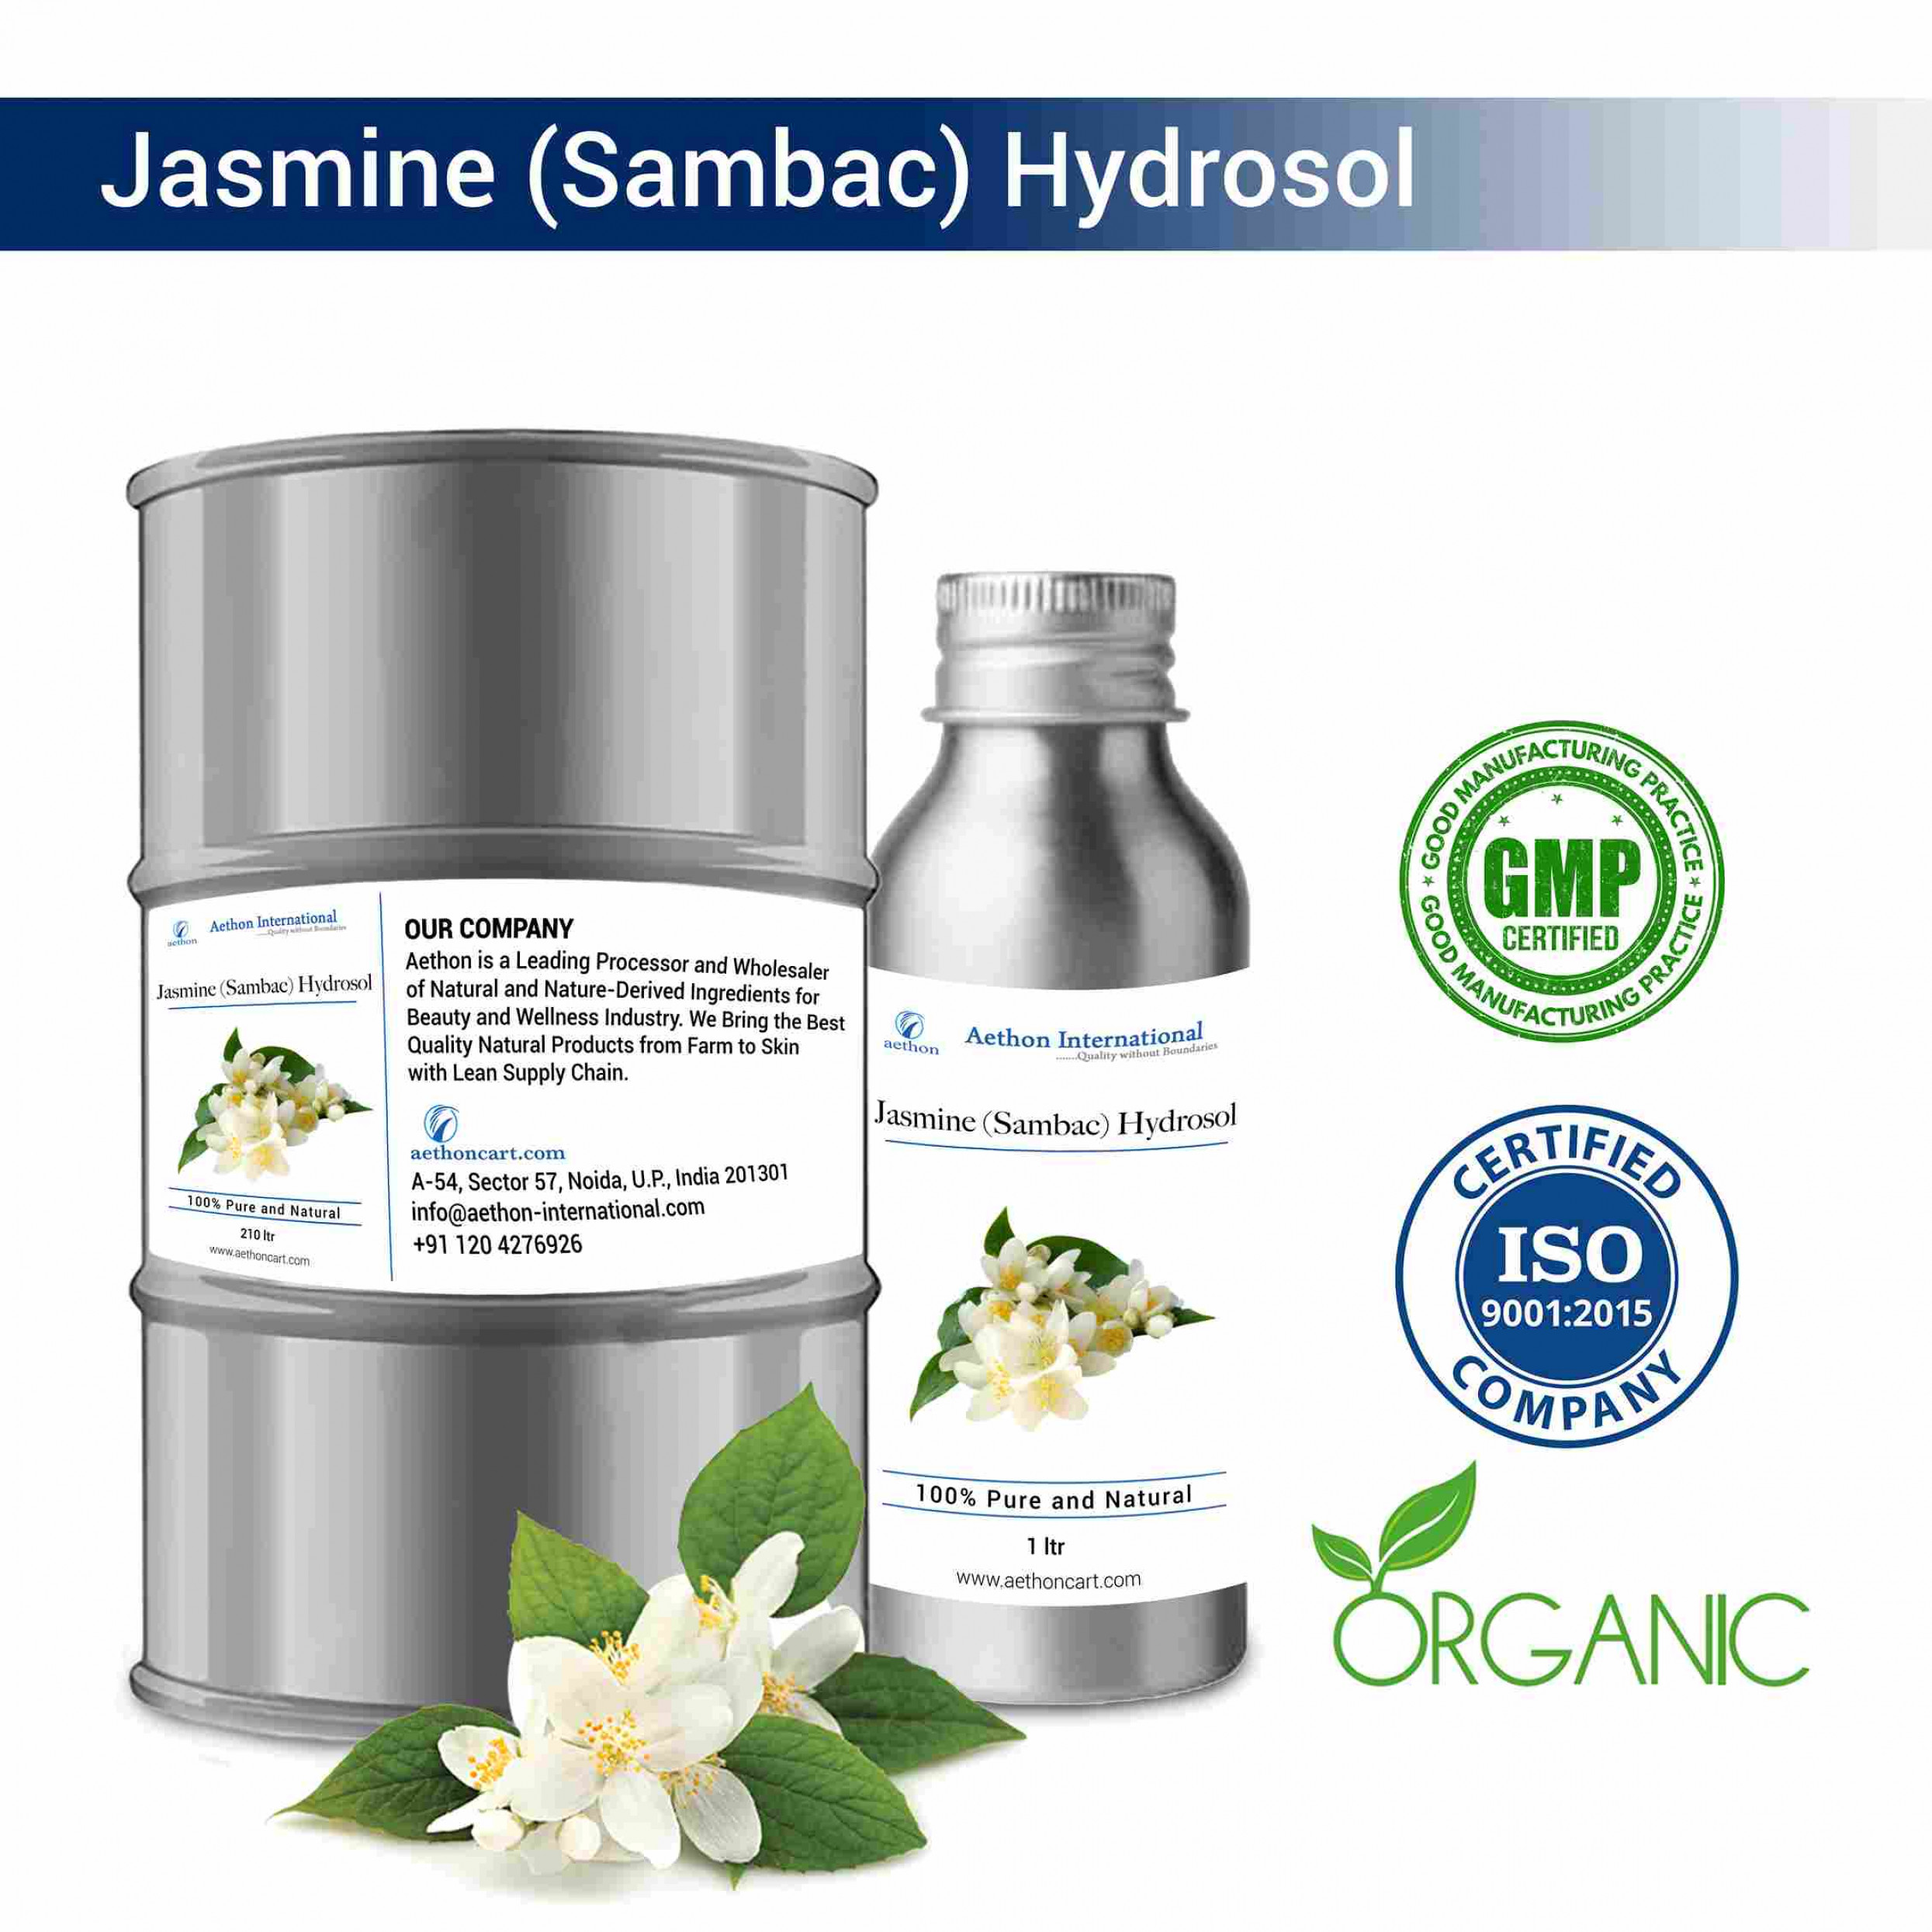 Jasmine (Sambac) Hydrosol